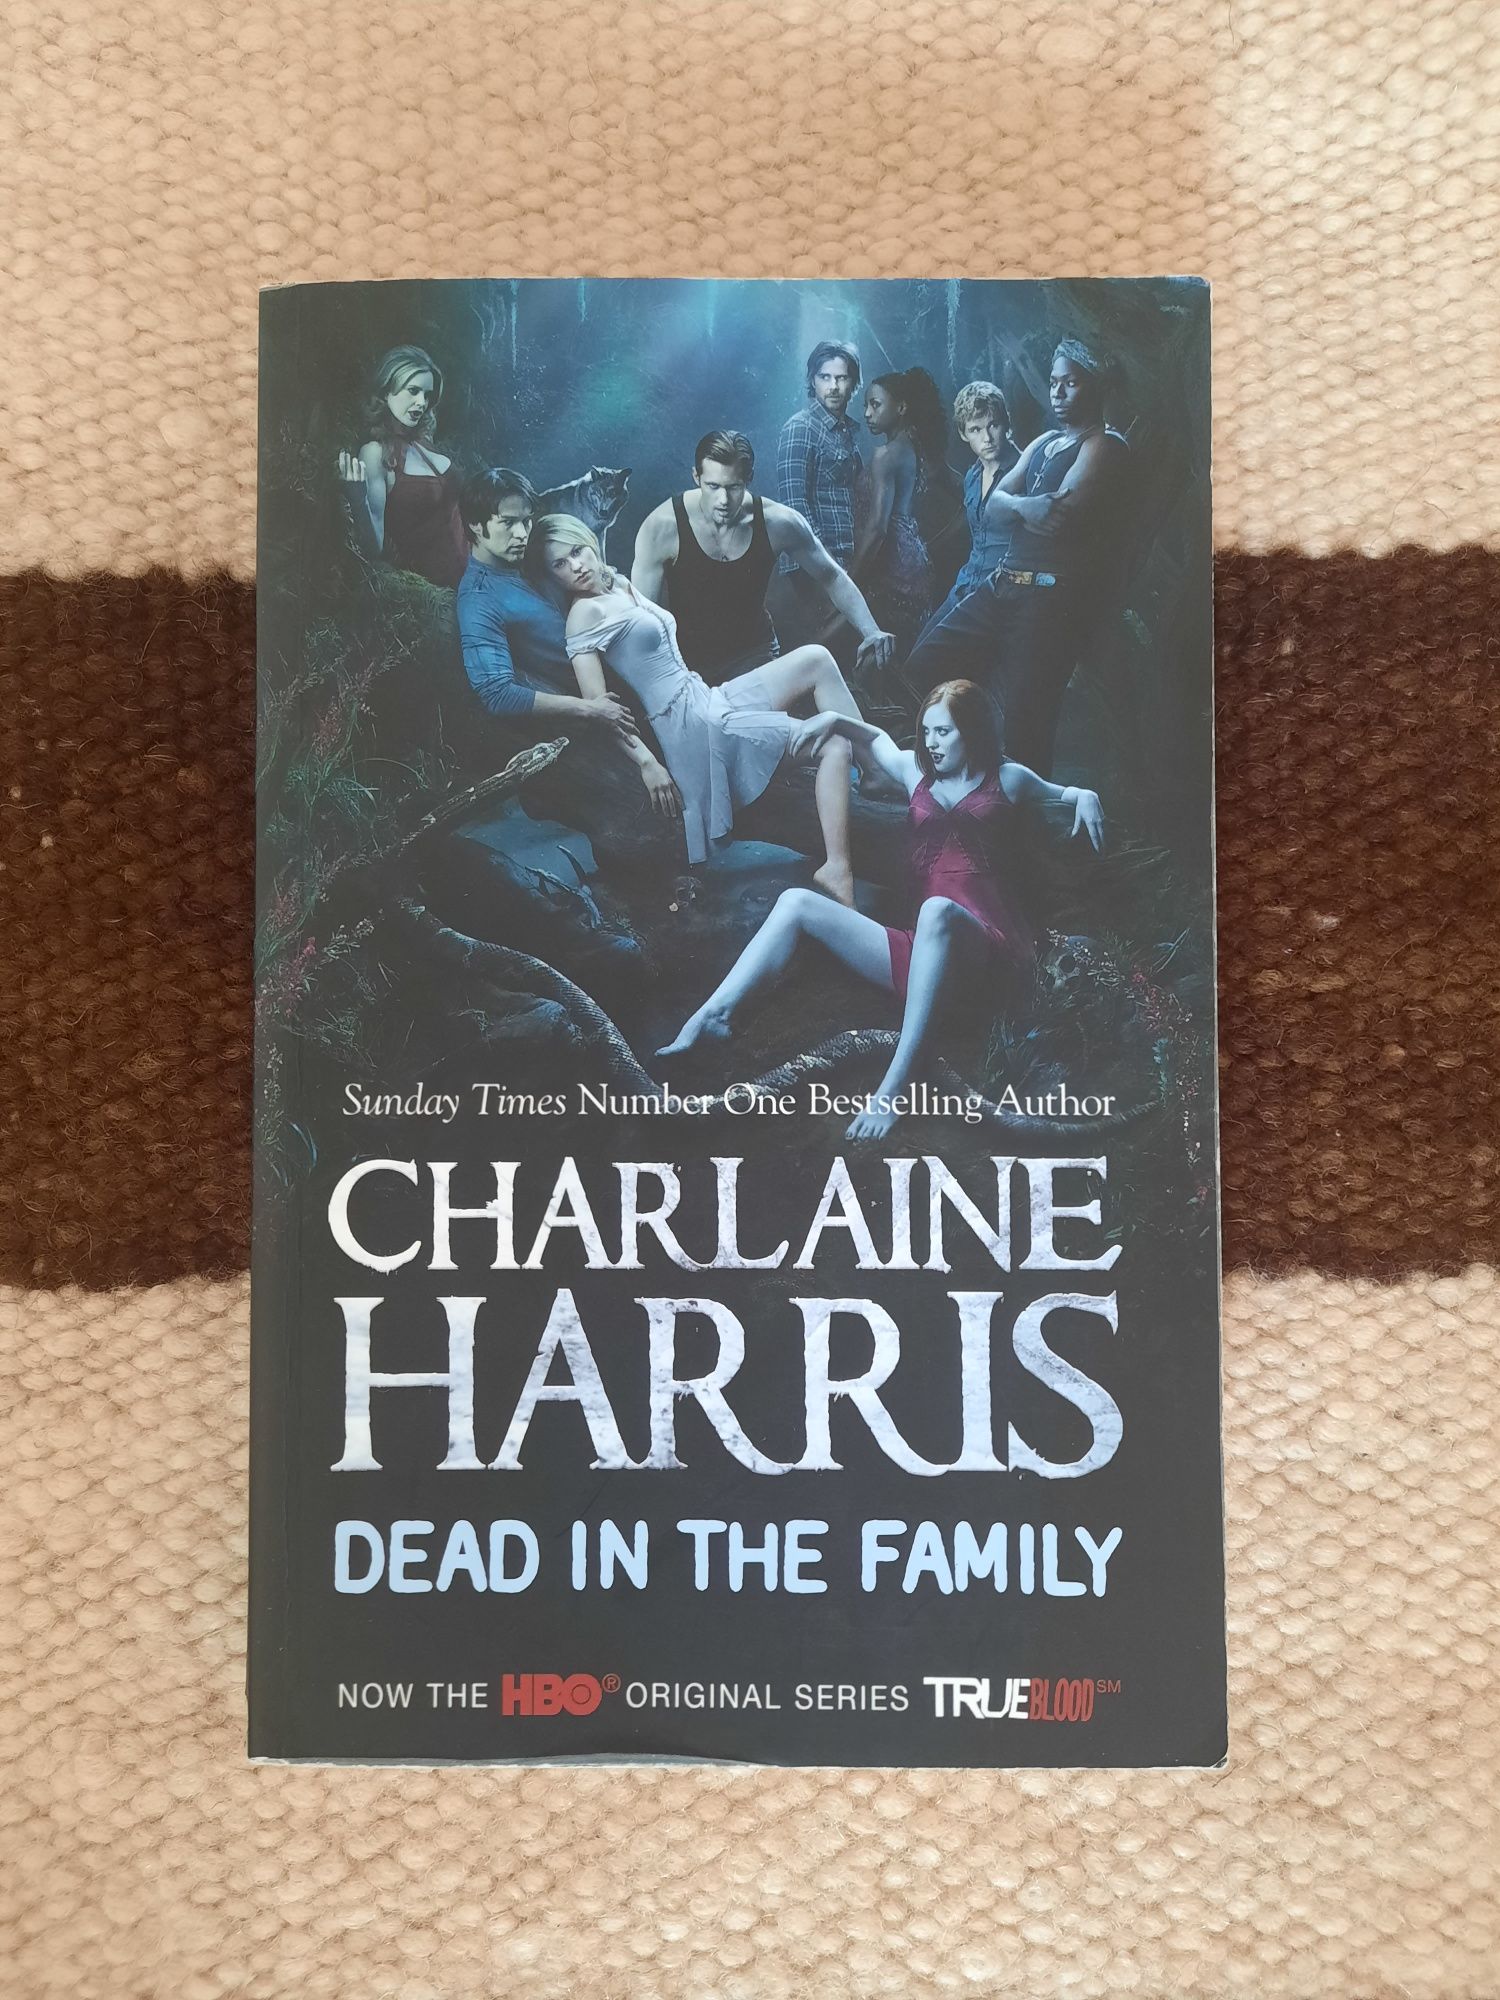 Livro "Dead in the Family", de Charlaine Harris (True Blood)